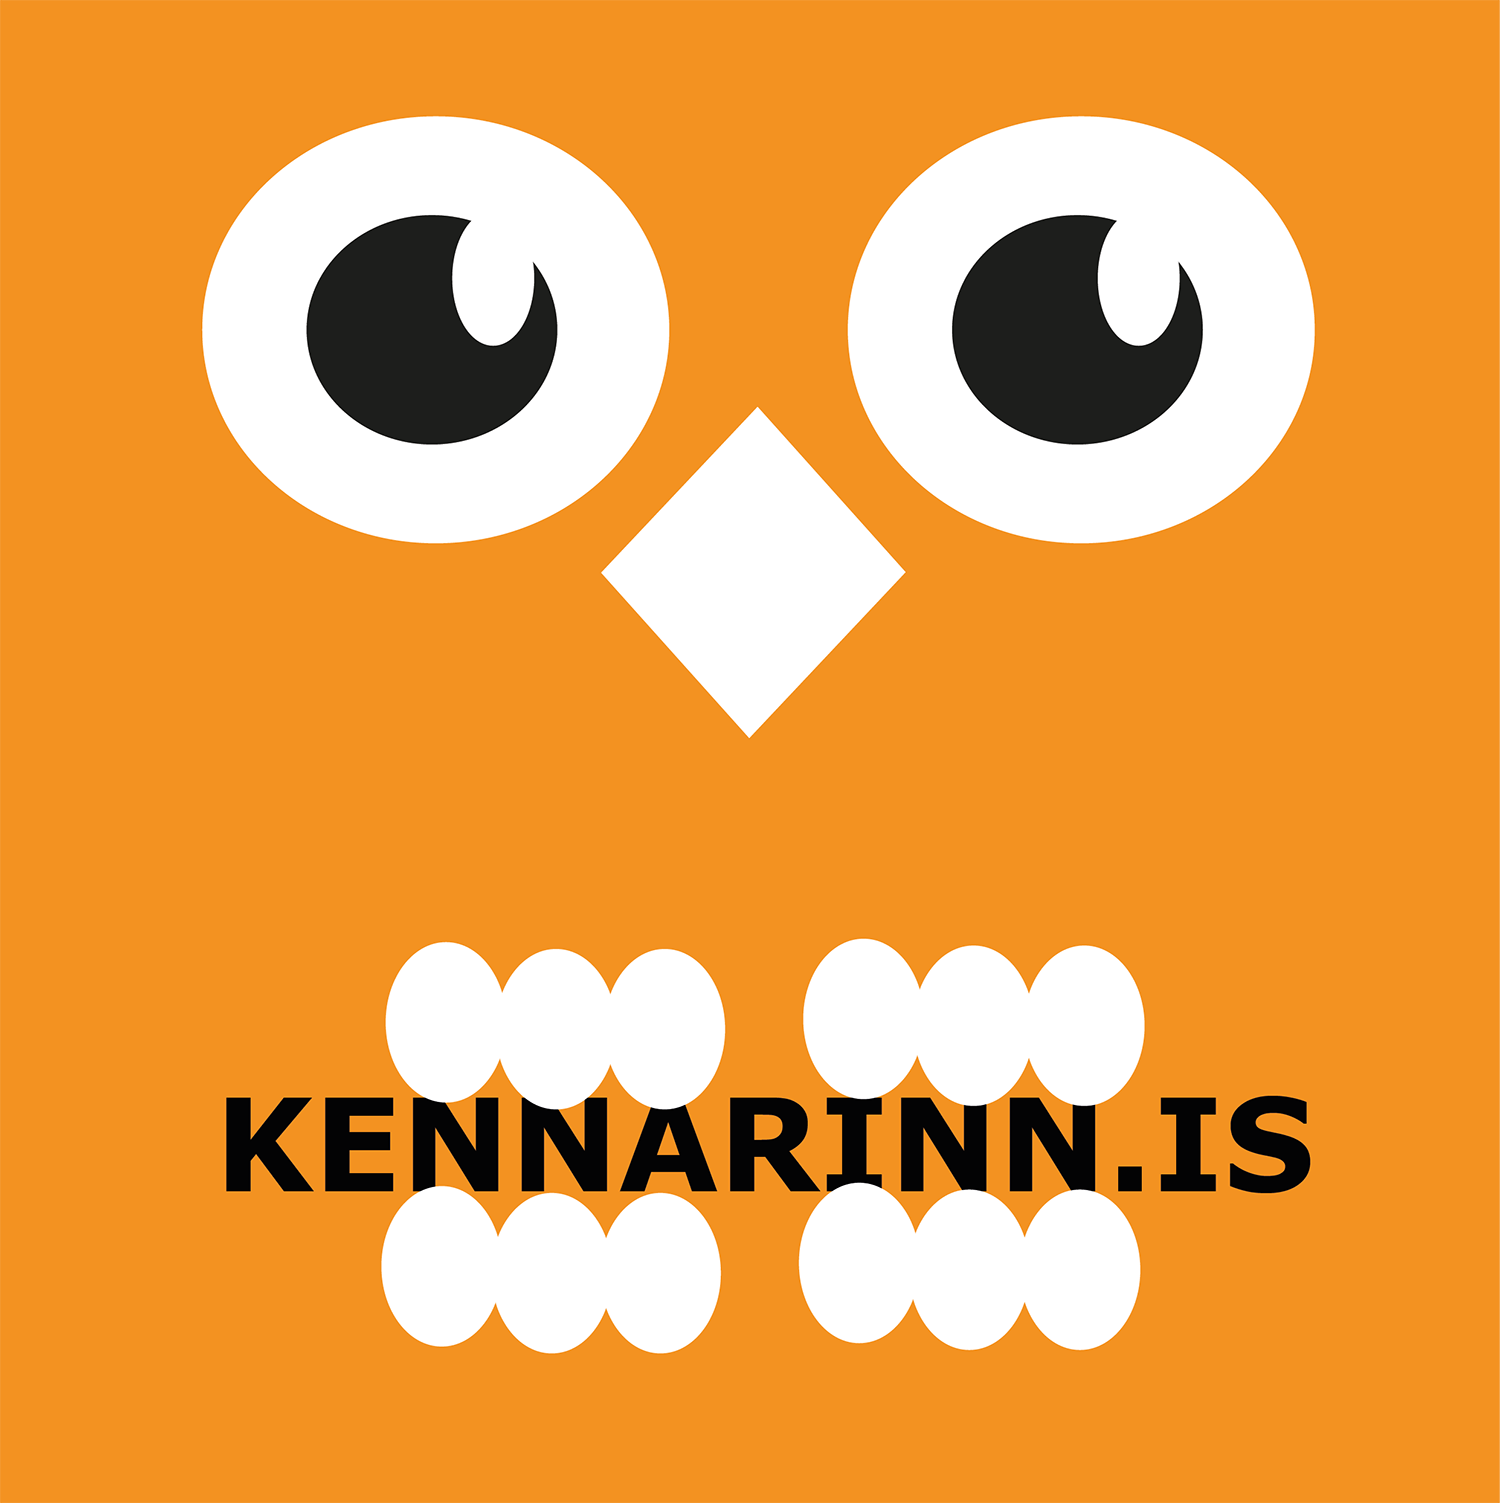 Kennarinn.is